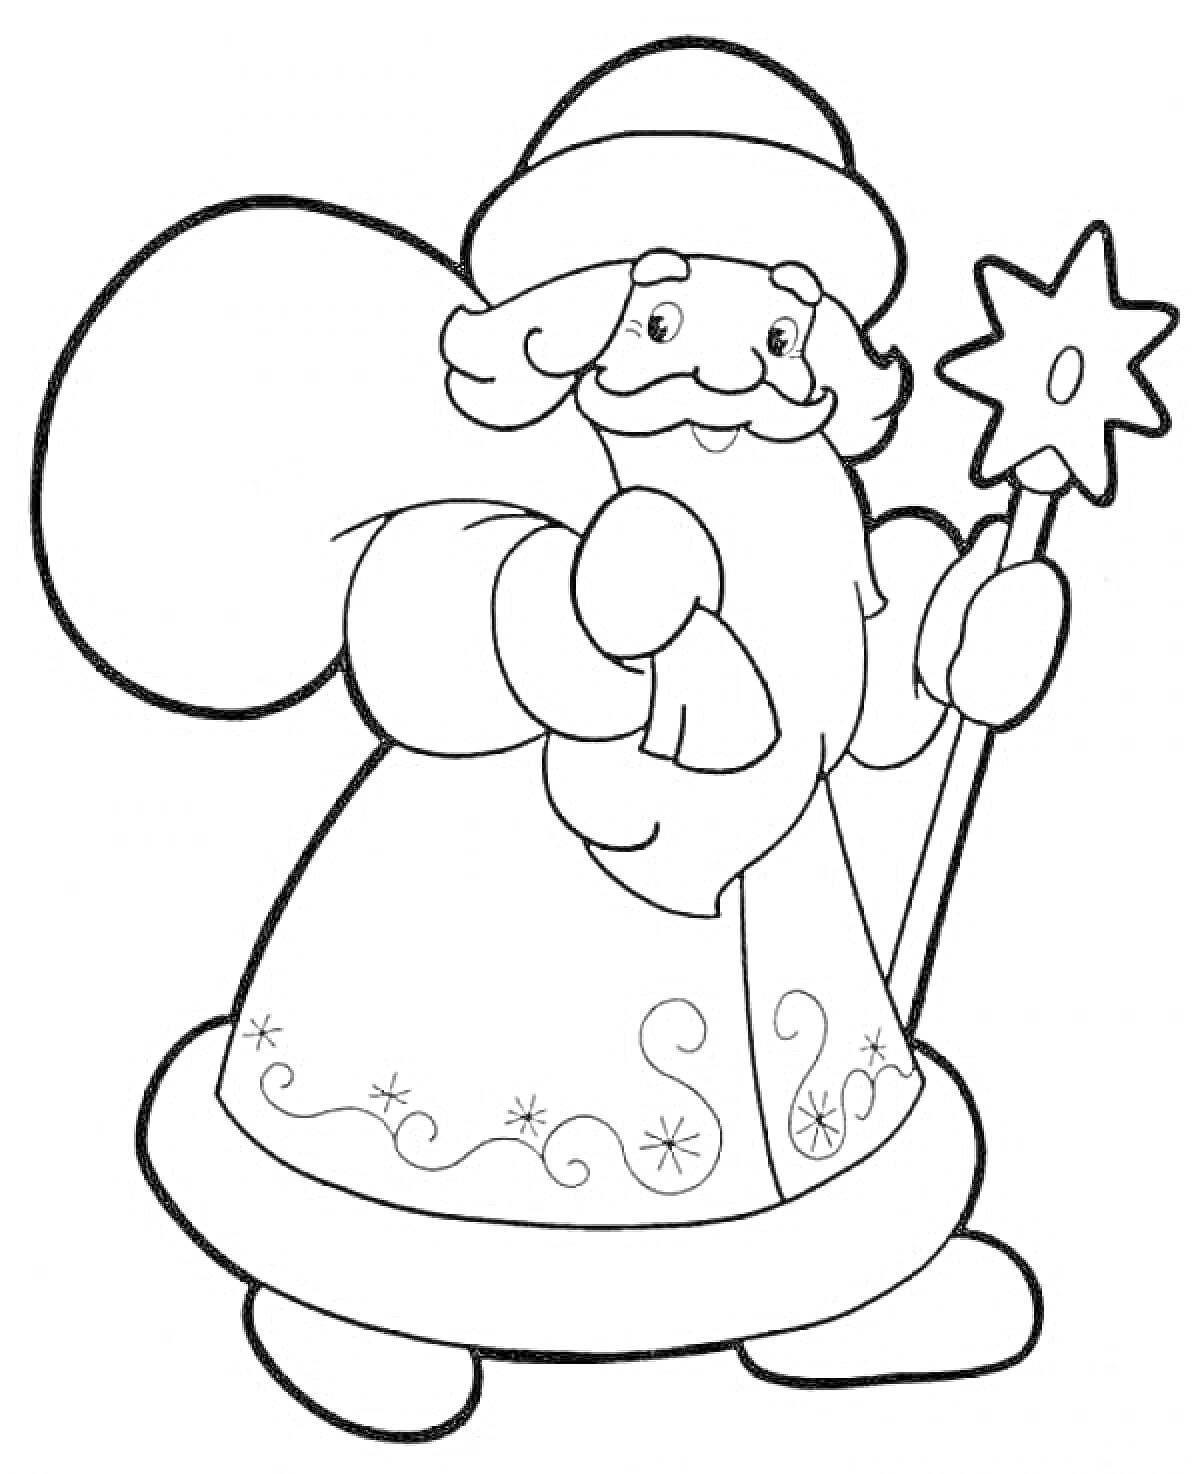 Дед Мороз с посохом в руке и украшенной шубой